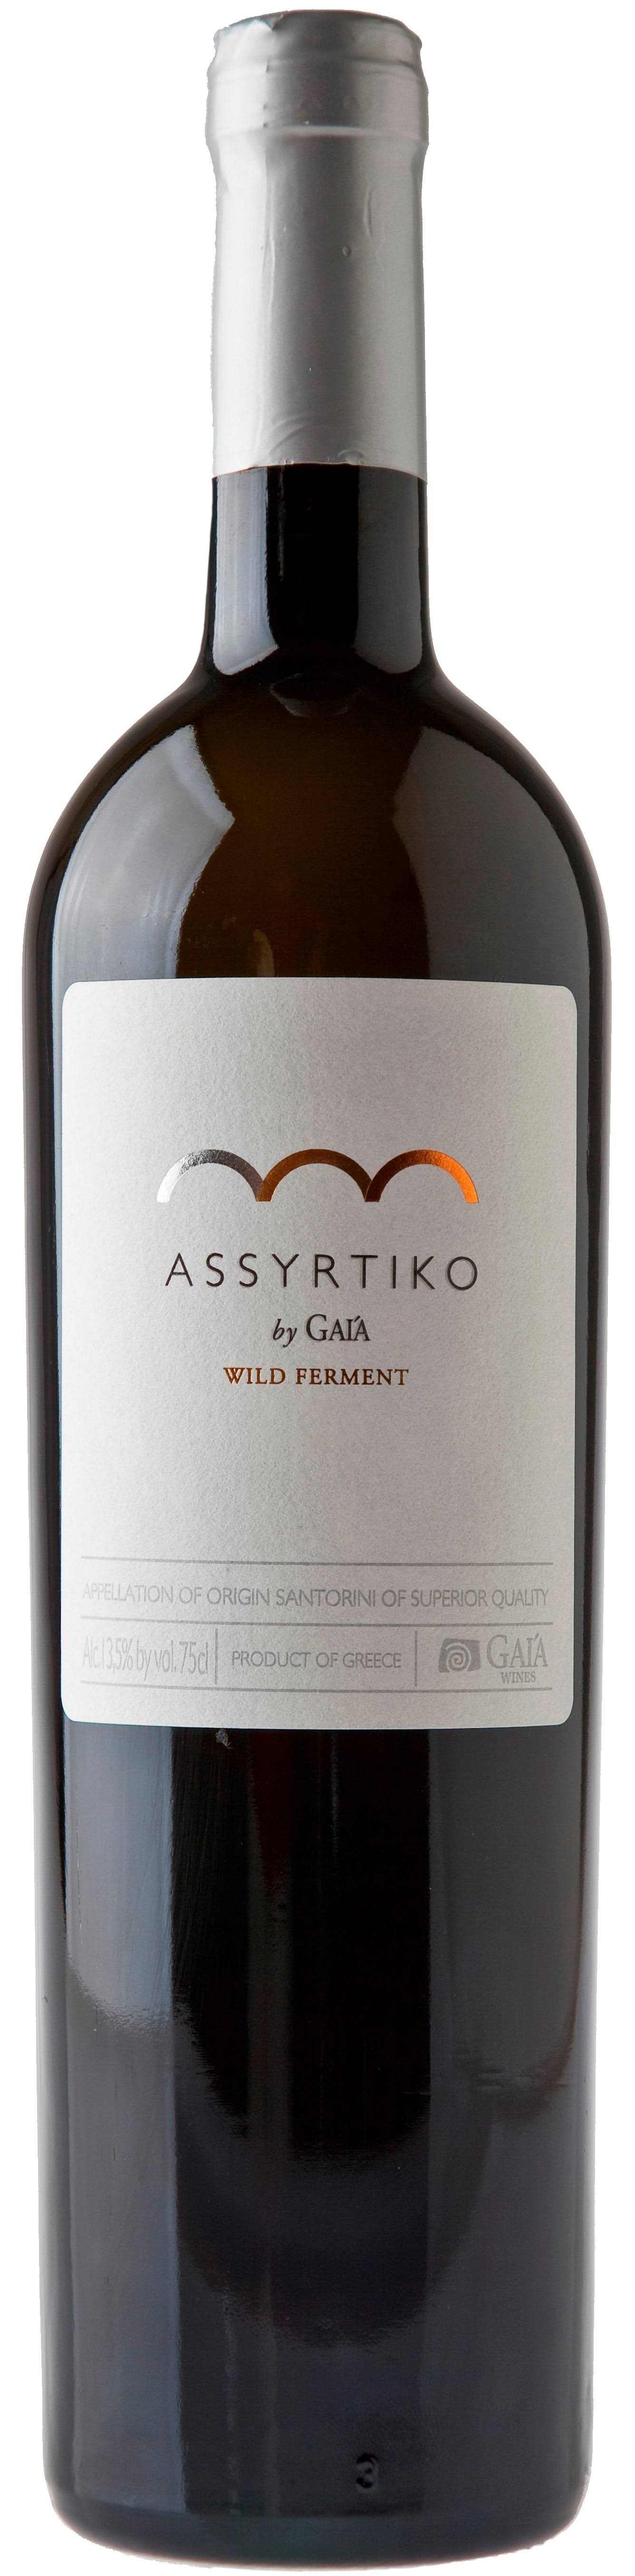 Gaia Assyrtiko Wild Ferment White Wine - Aegean, Greece